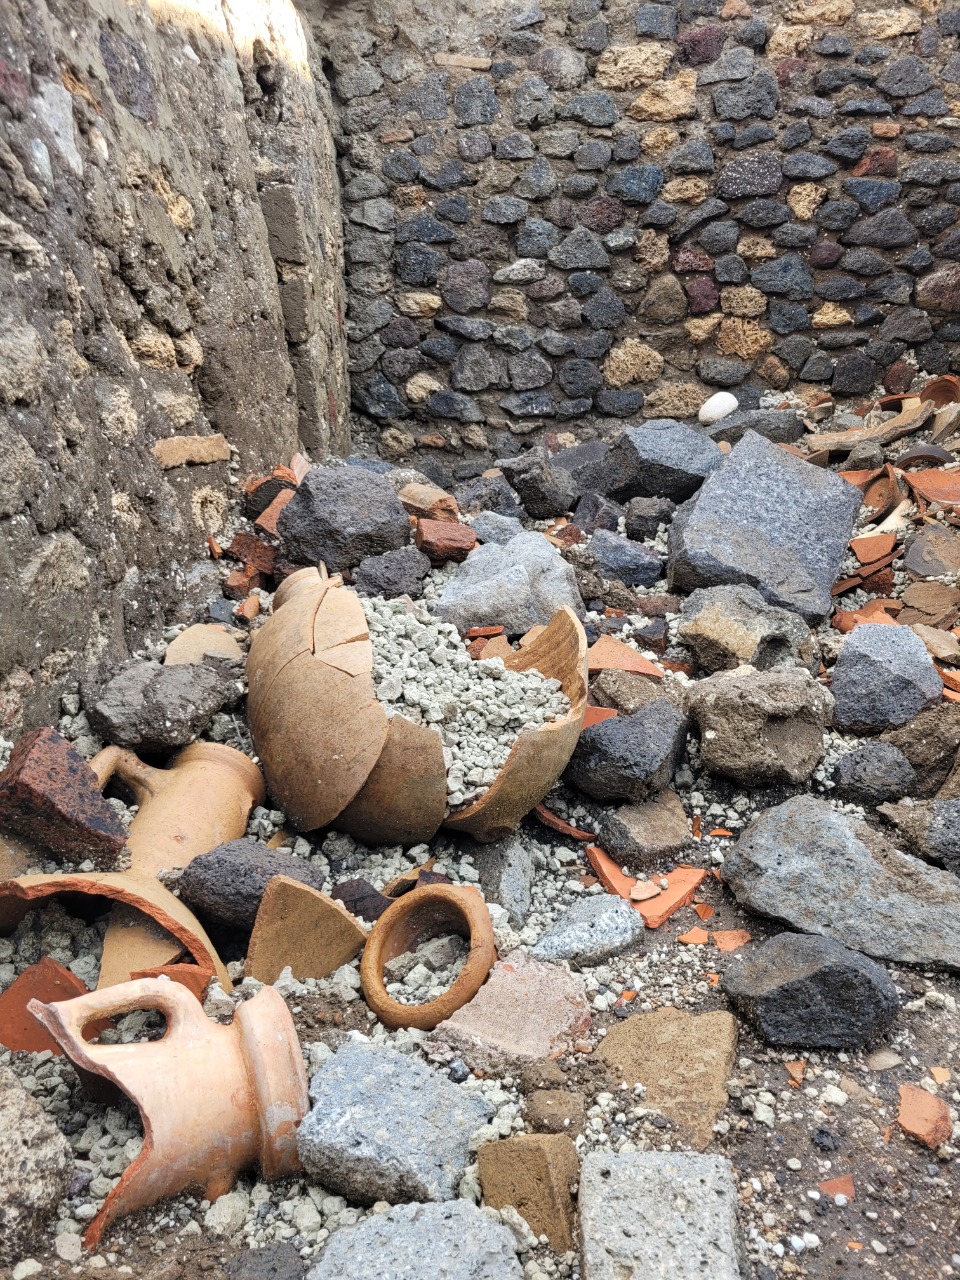 Materiale edilizio e ceramiche accumulato per i lavori in corso Regio IX